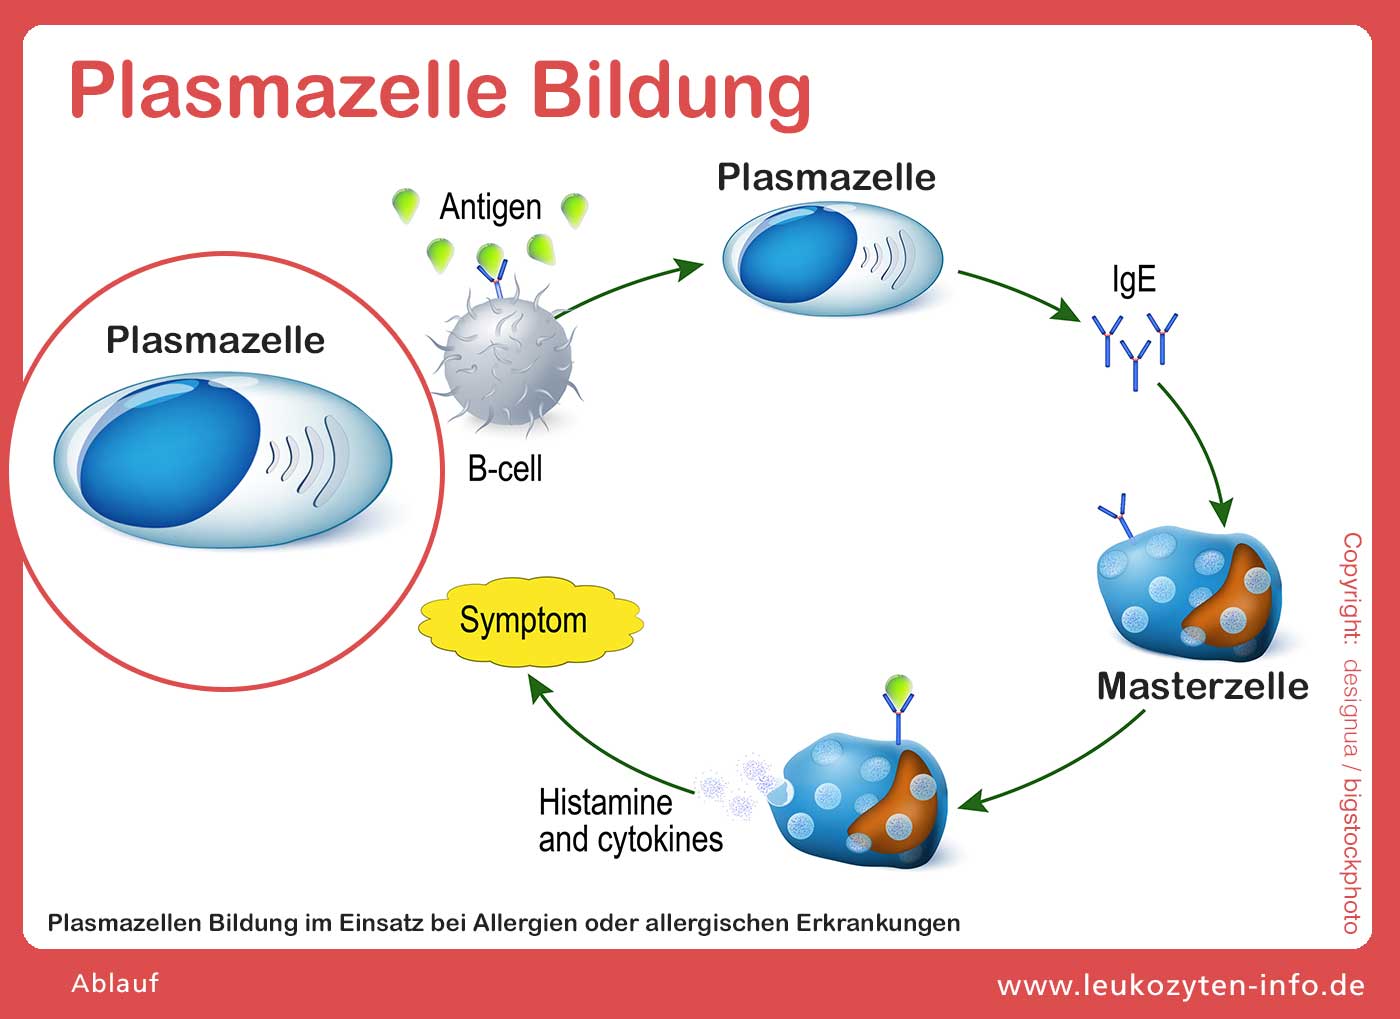 Plasmazelle Bildung zur Immunabwehr